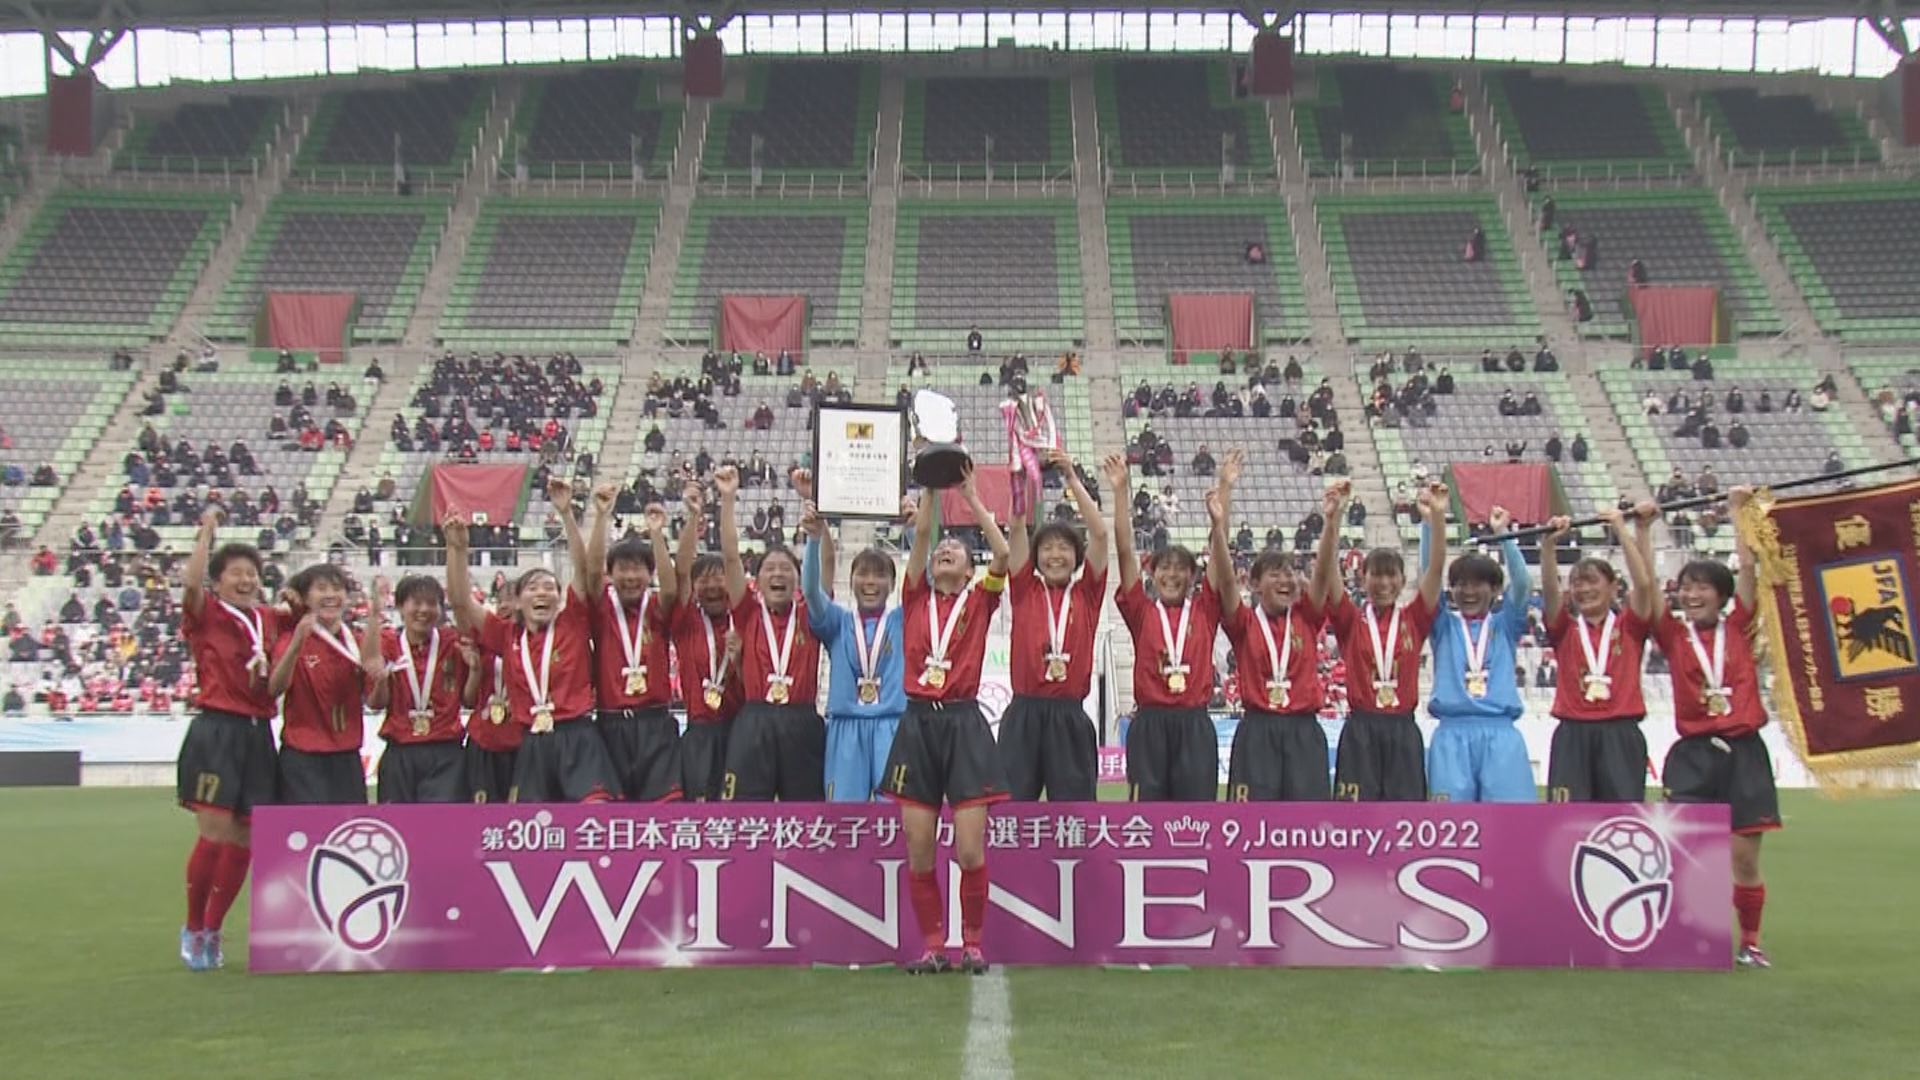 神村学園が夏 冬２冠達成 全日本高校女子サッカー選手権 Mbcスポーツニュース